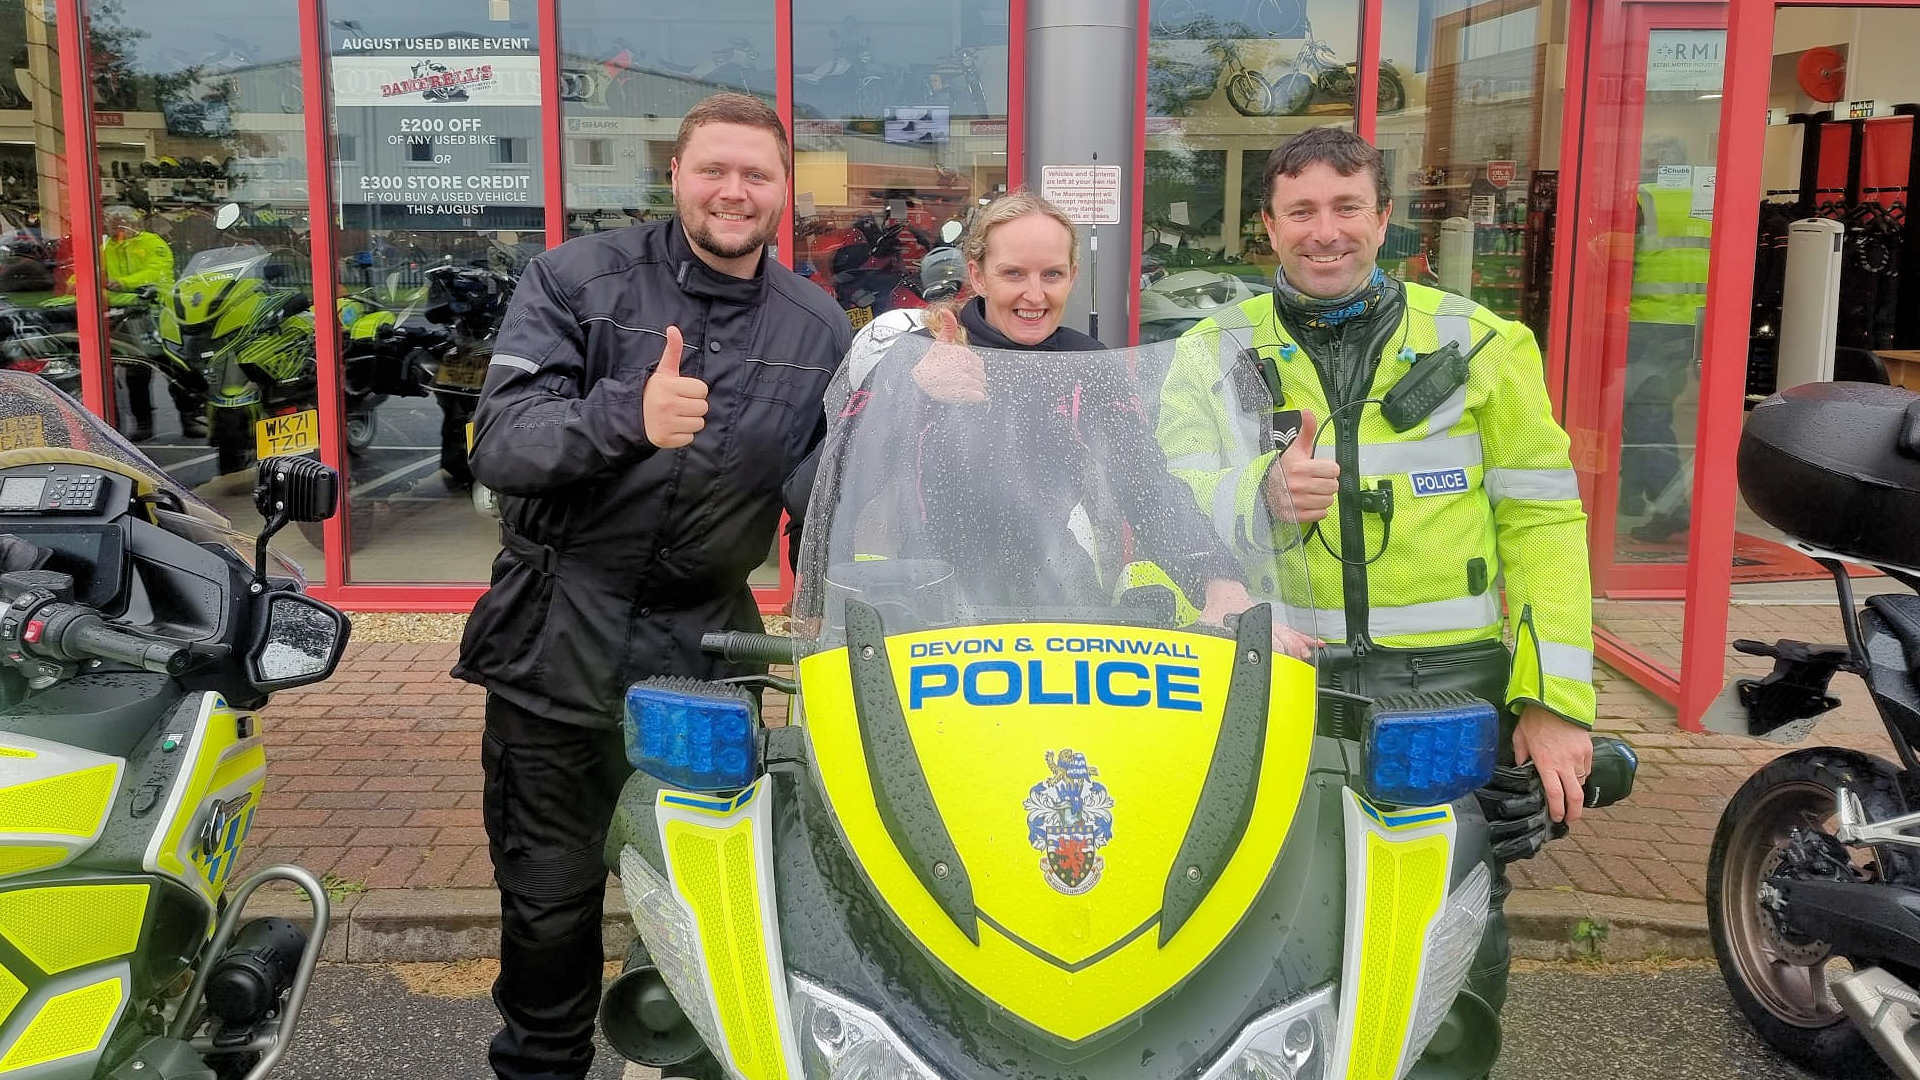 BikeSafe workshop with Devon & Cornwall Police